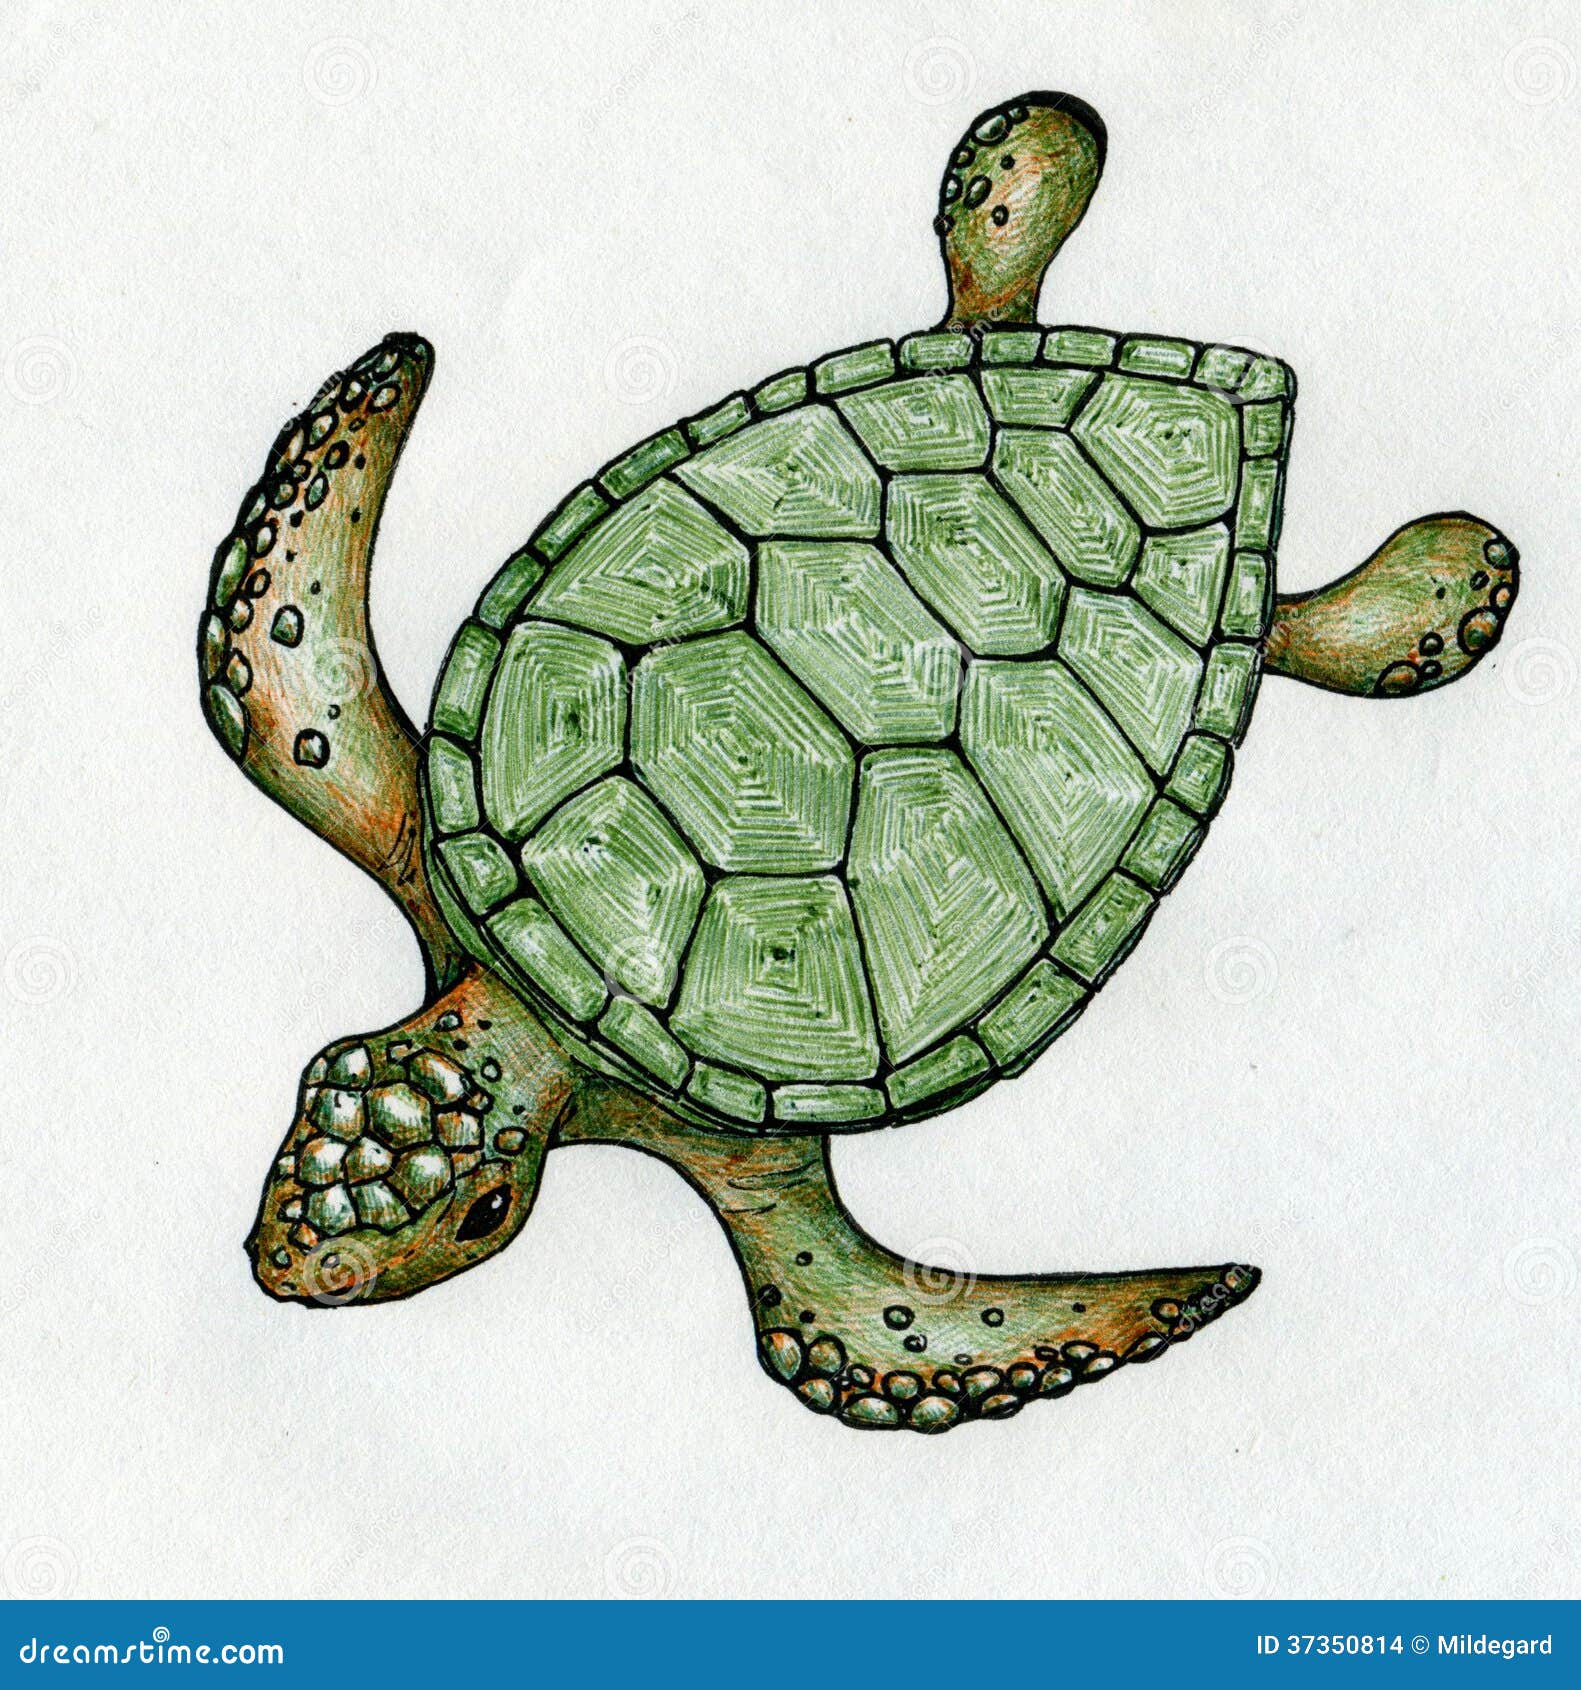 Swimming sea turtle stock illustration. Illustration of turtles ...